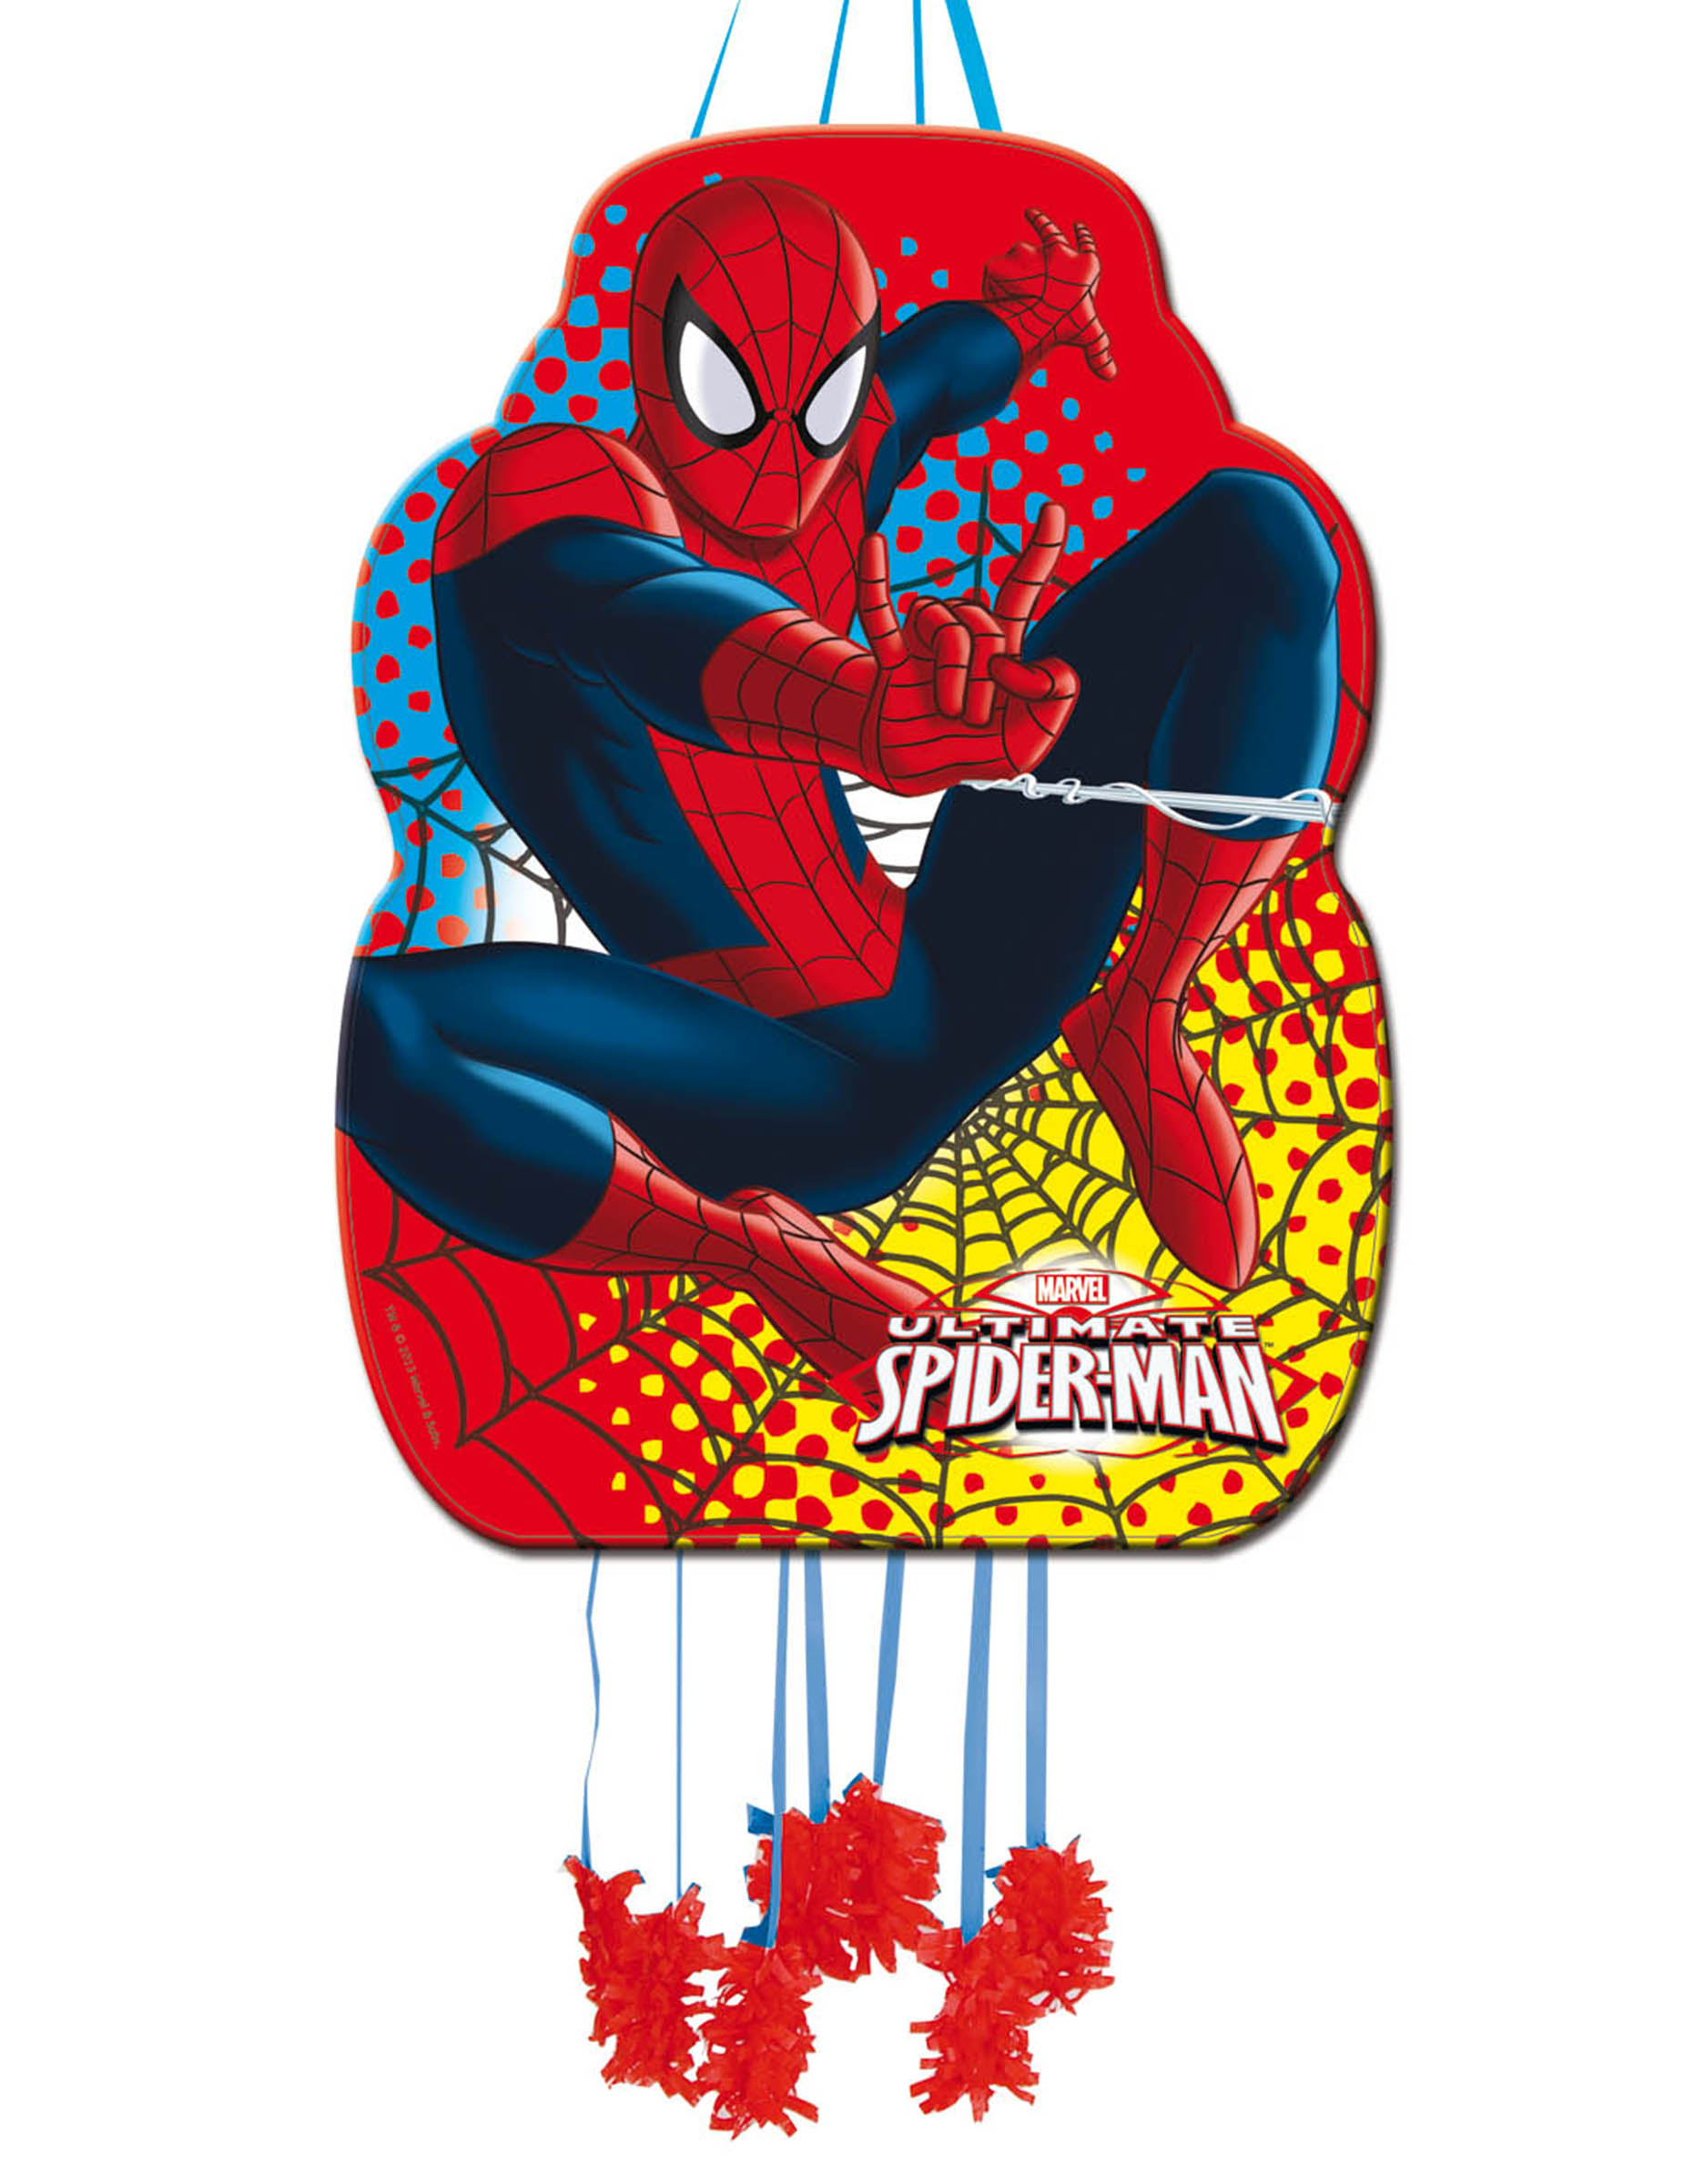 70 ideas de decoración para Fiesta de Spiderman  Decoración de unas,  Decoracion fiesta, Hombre araña fiesta